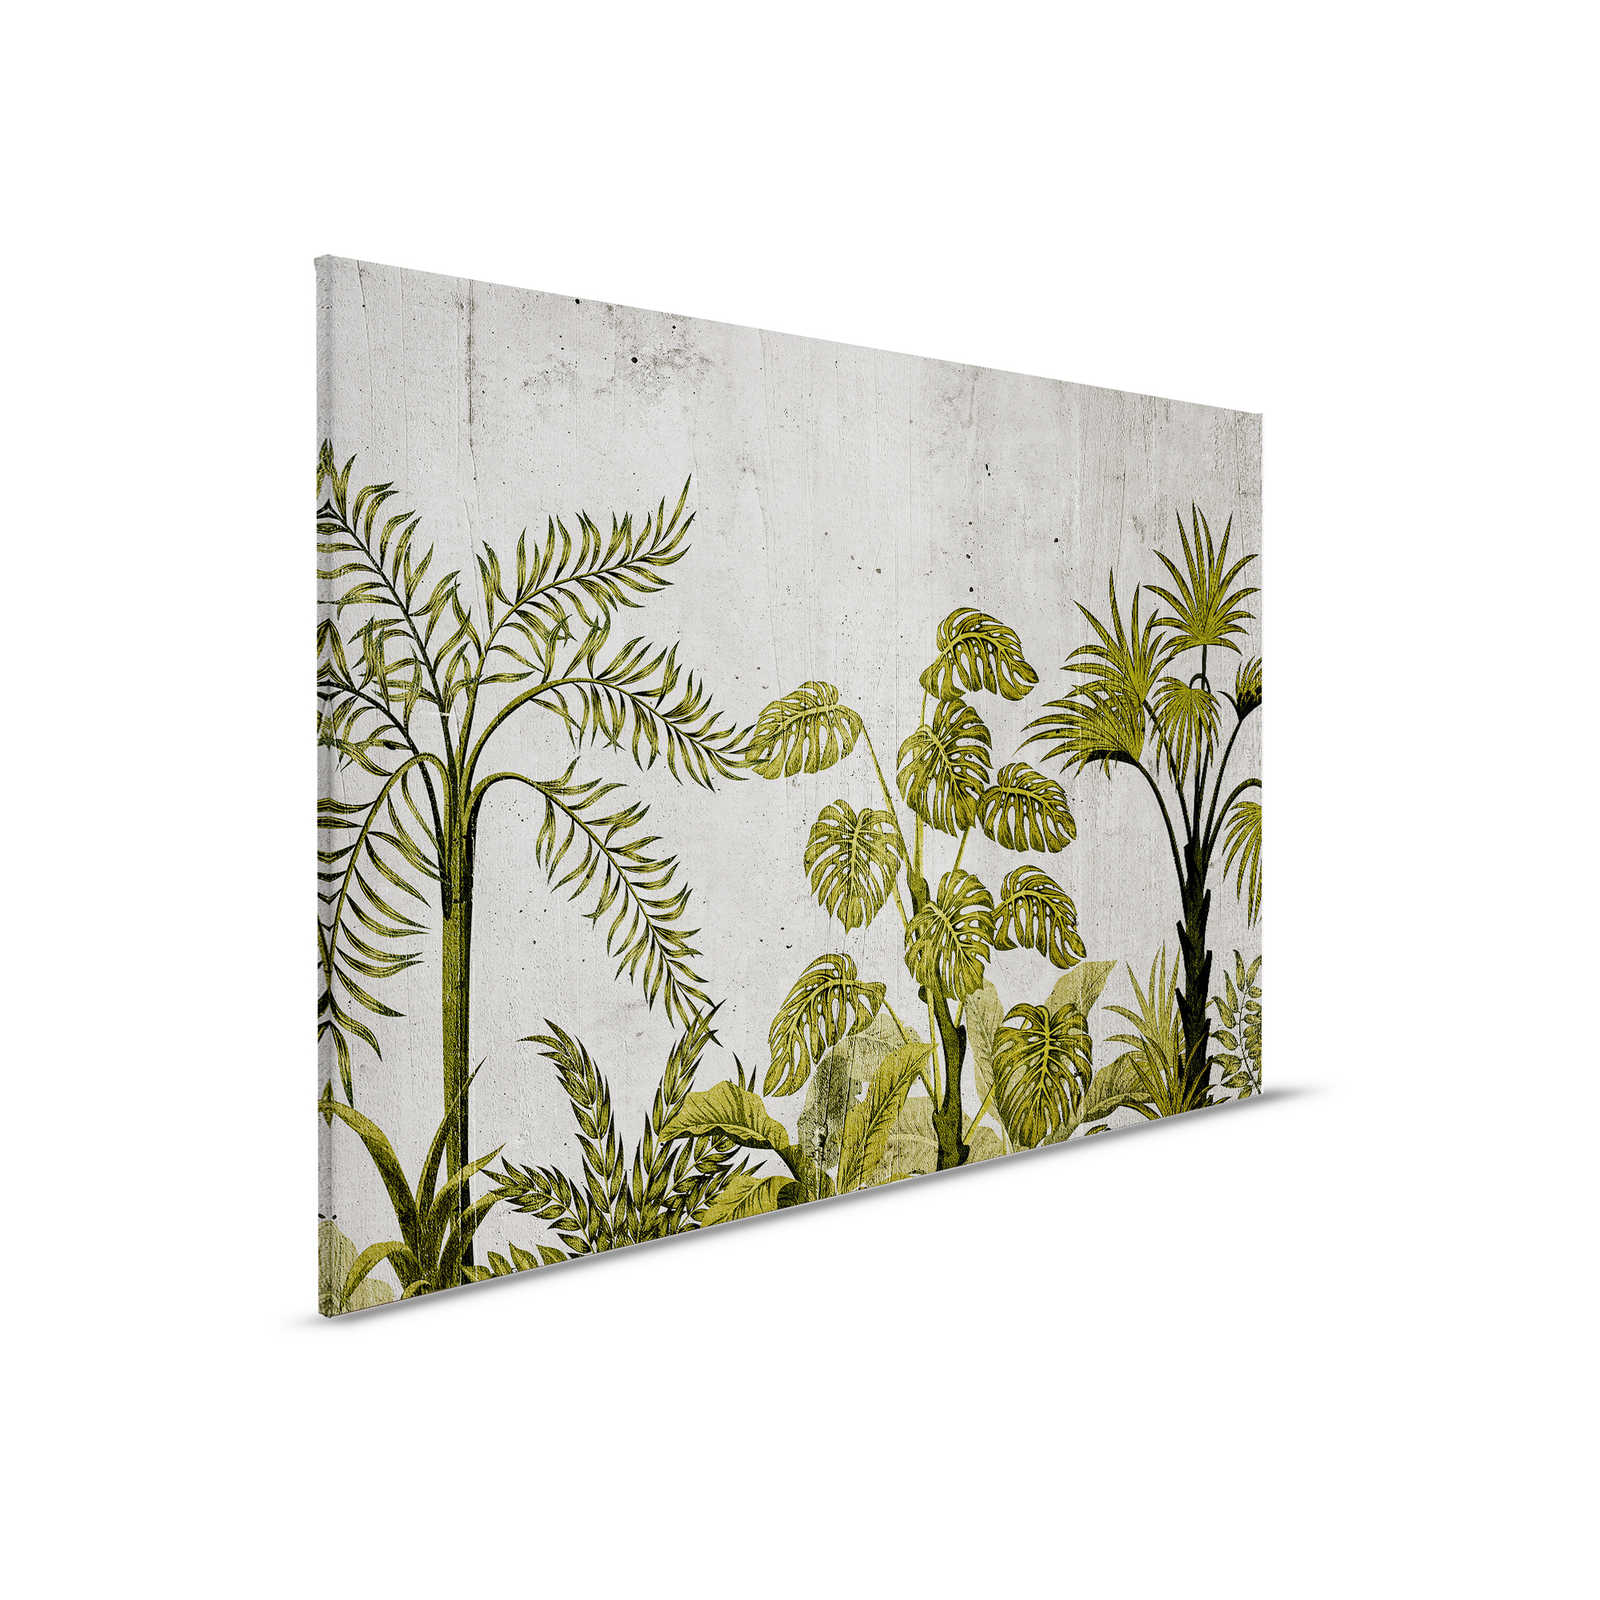 Quadro su tela con motivo jungle su sfondo in cemento - 0,90 m x 0,60 m
